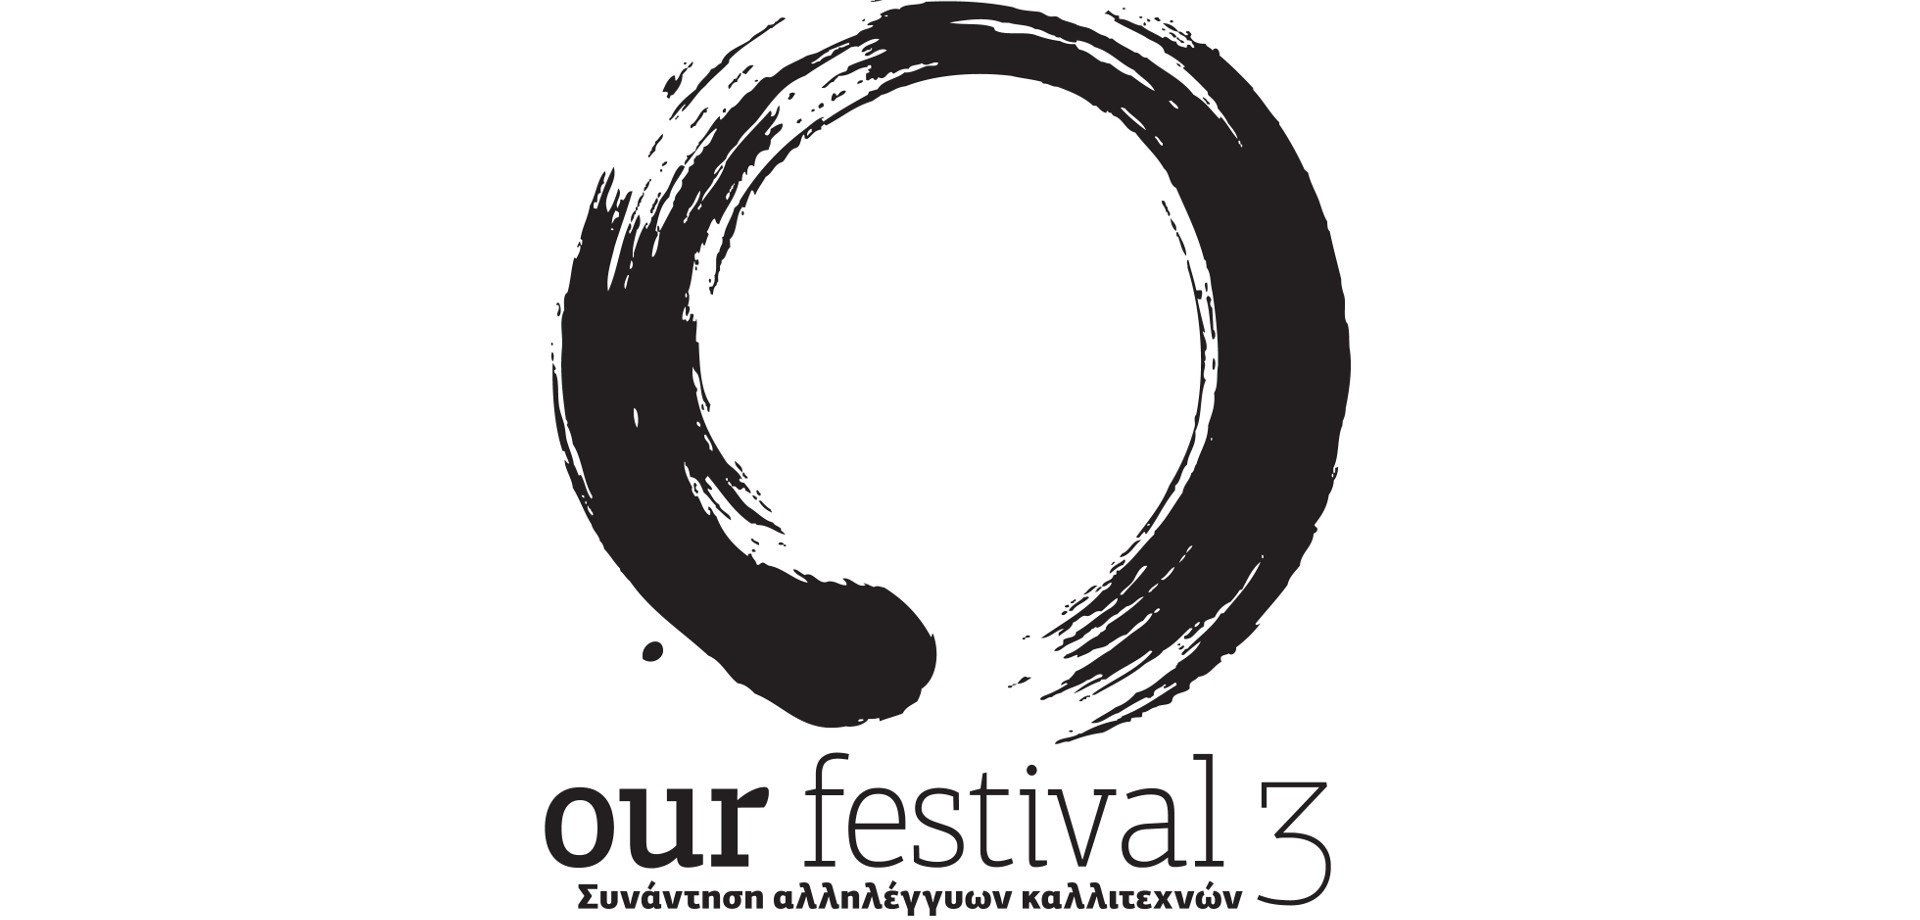 Our Festival 3: Συνάντηση αλληλέγγυων καλλιτεχνών